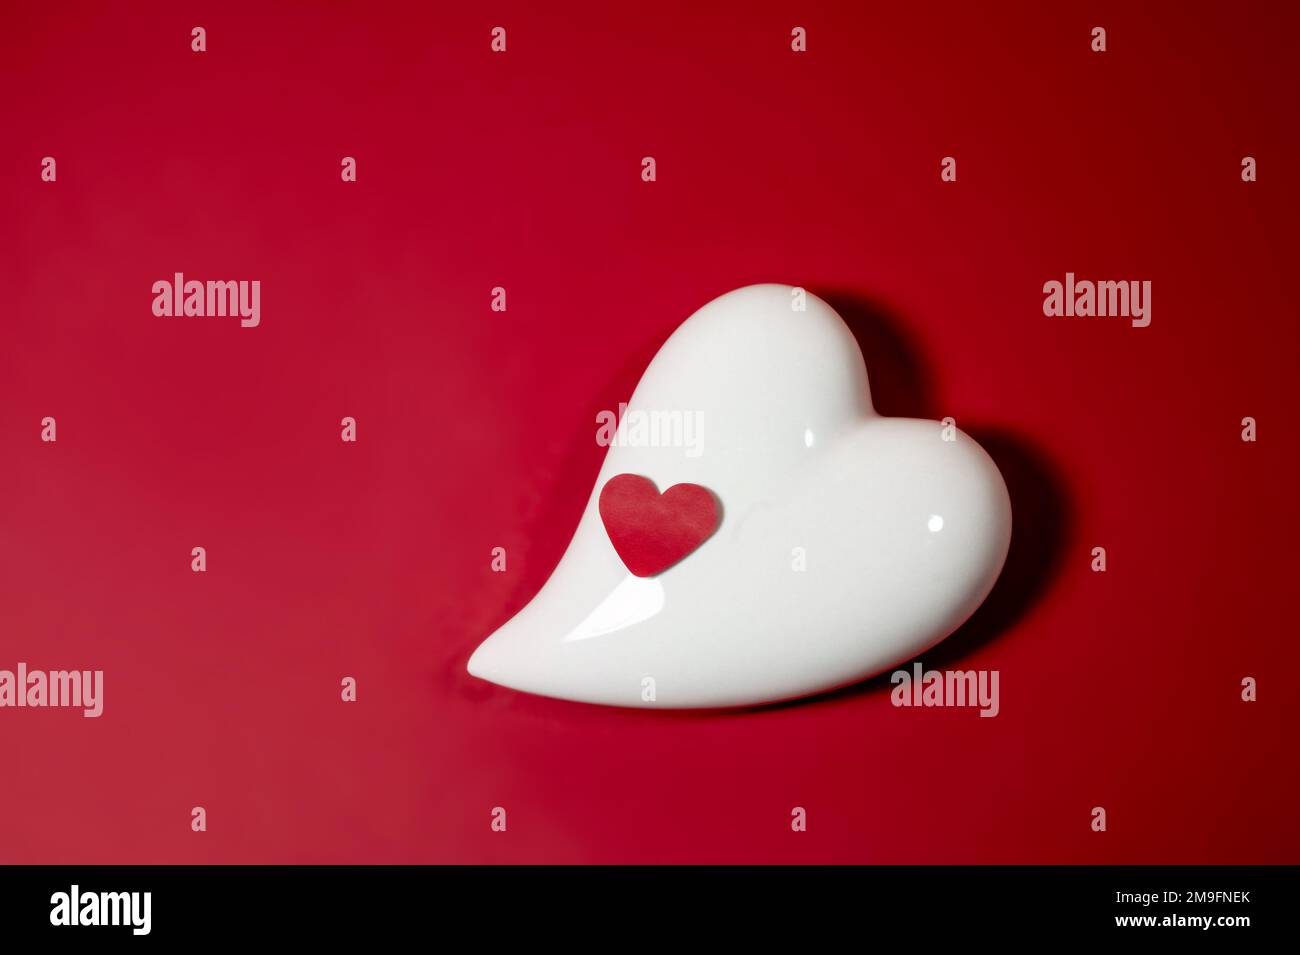 Corazón de porcelana blanca y pequeño corazón de papel sobre un fondo rojo, símbolo de amor y tarjeta de felicitación para vacaciones como San Valentín o el día de las madres, espacio de copia Foto de stock